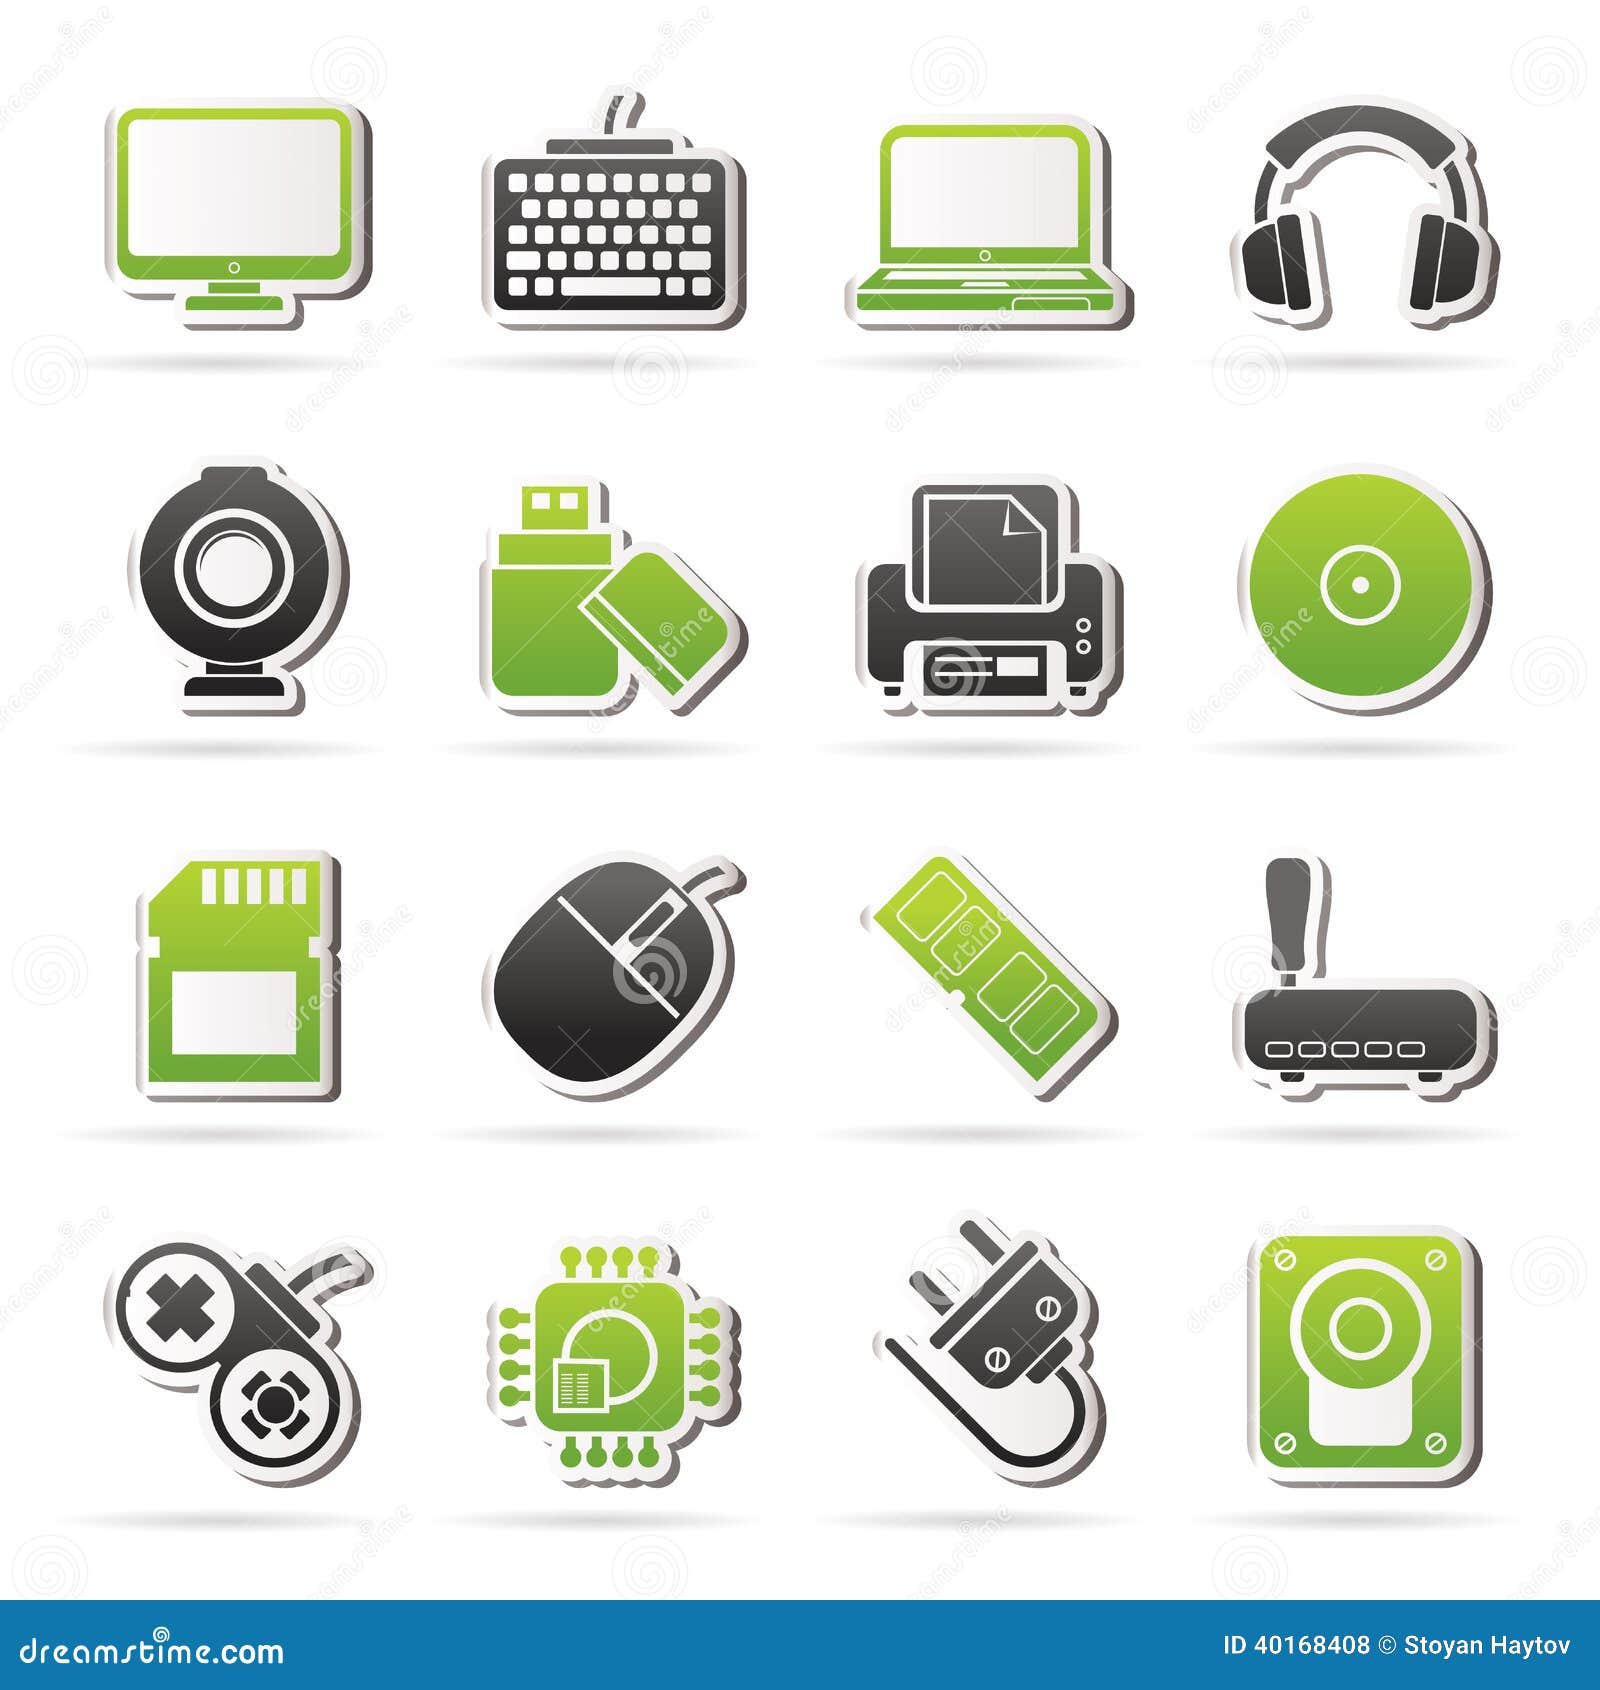 Computer Accessories Icon